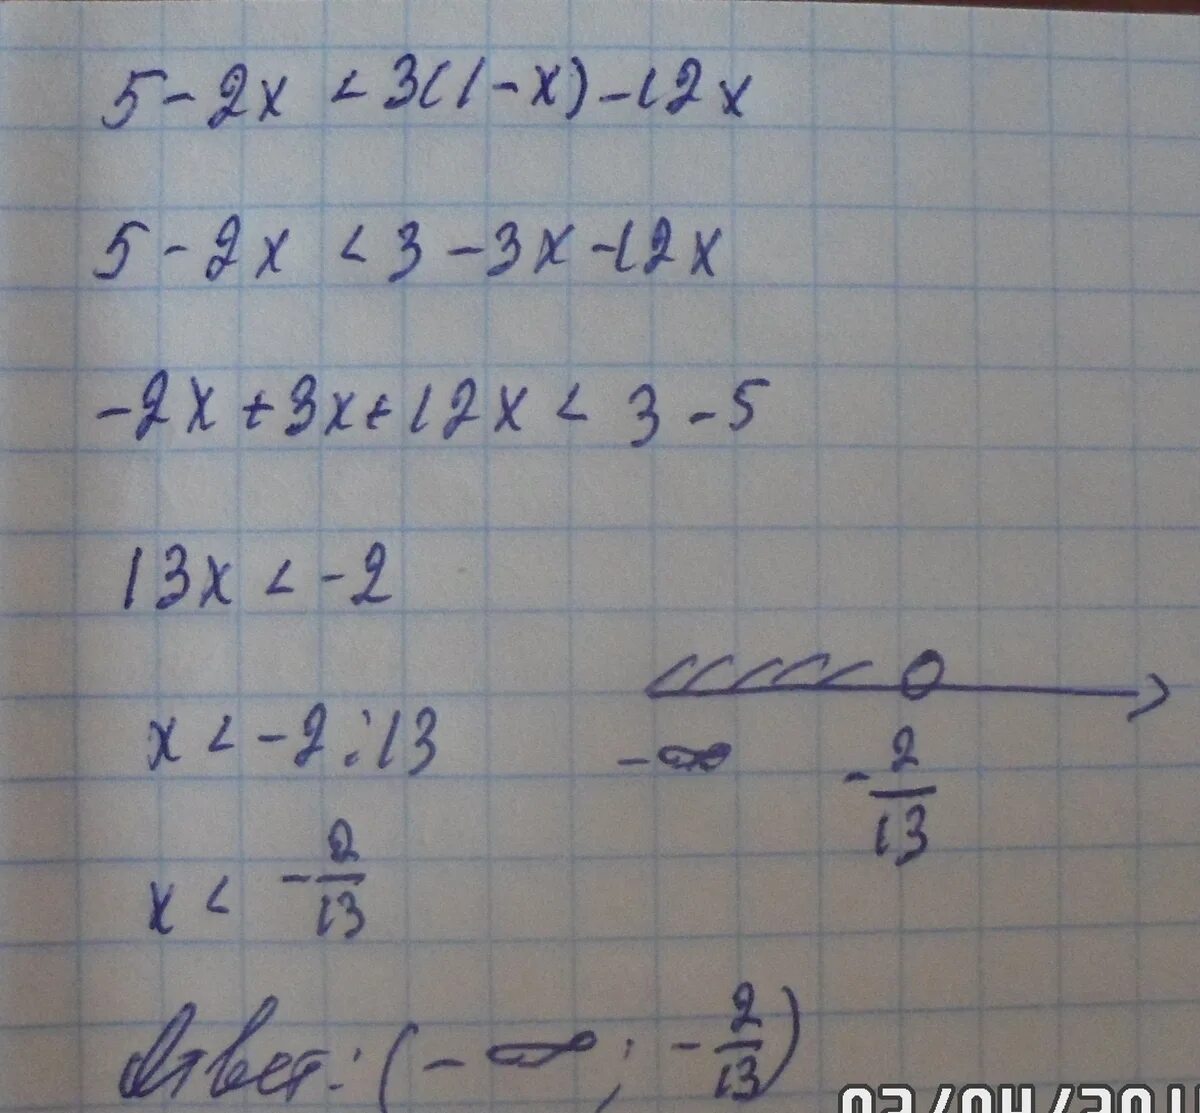 5x 2 5. X*-5 =(X+5)(2x - 1). -3 решение. 2(3x-5)=5(x-1). 3x-2=5 решение. (X+2)(X-5)-3x(1-2x).